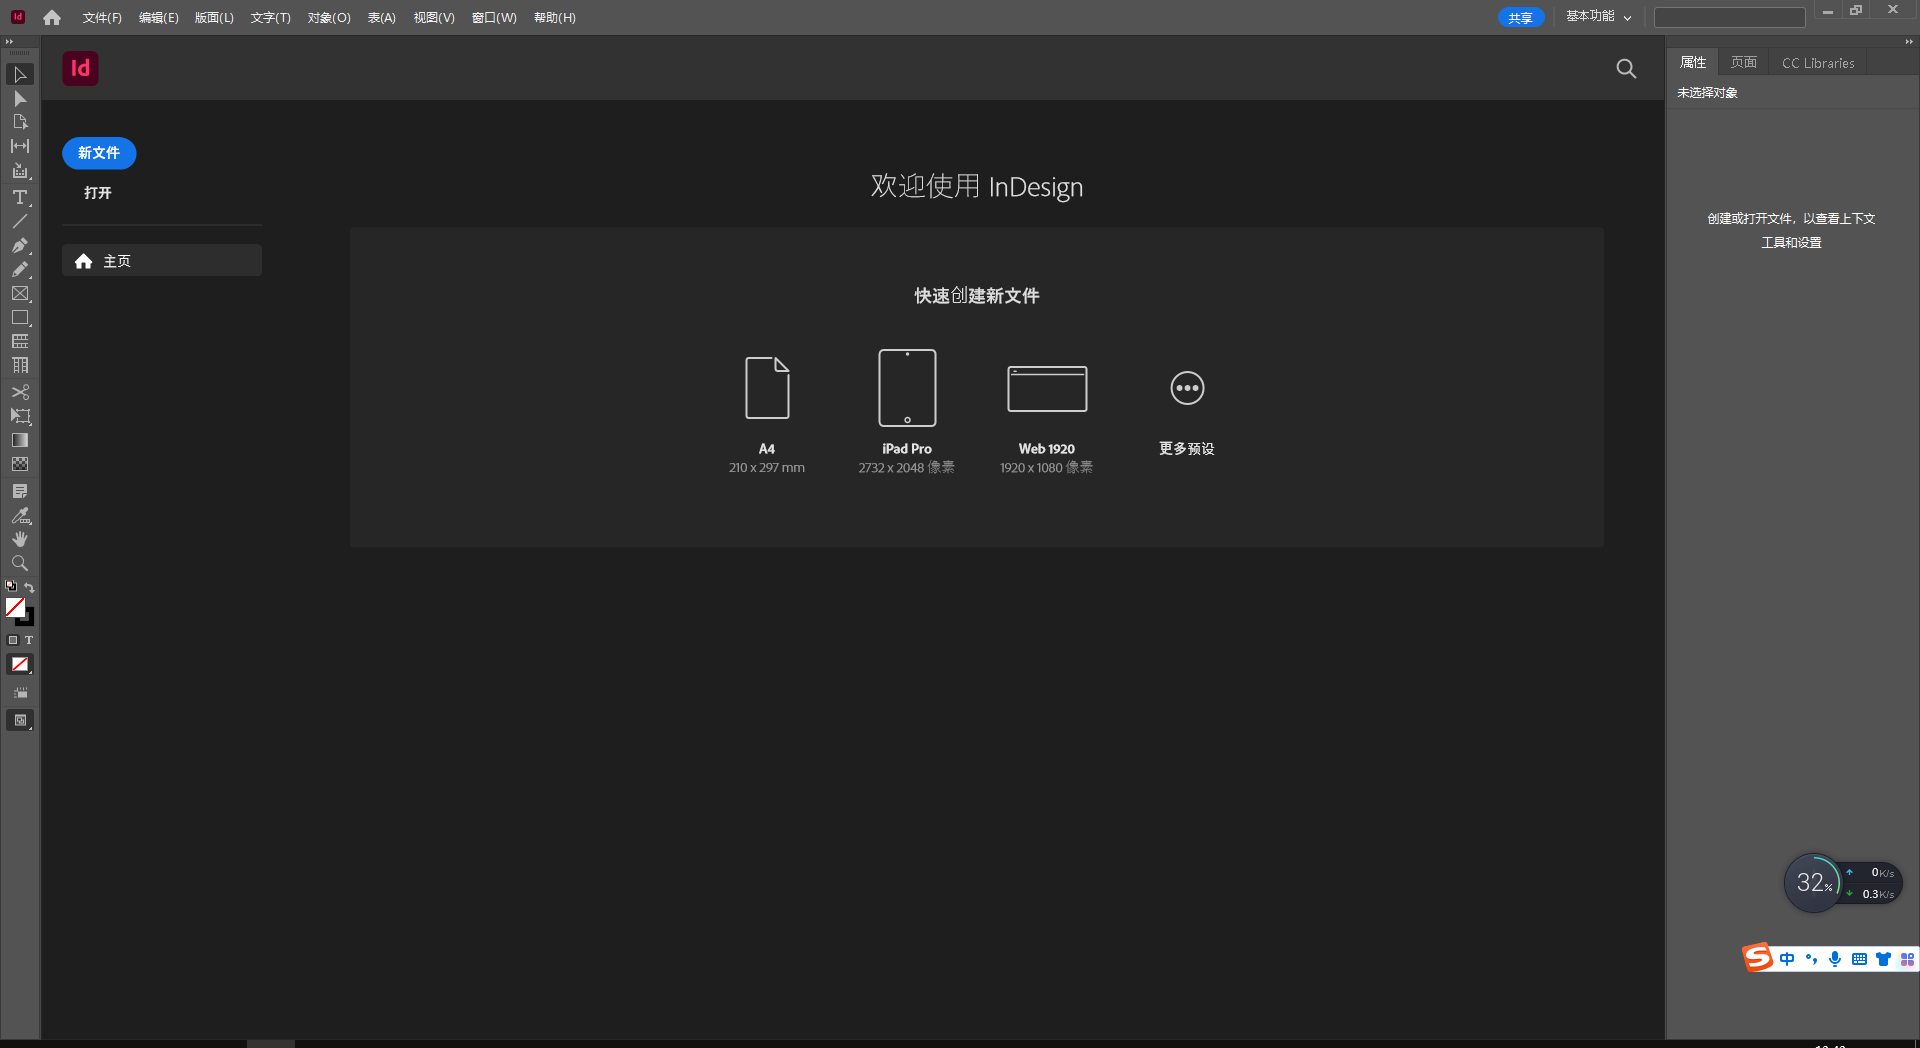 Adobe InDesign 2023 v18.4.0.56 instal the last version for windows